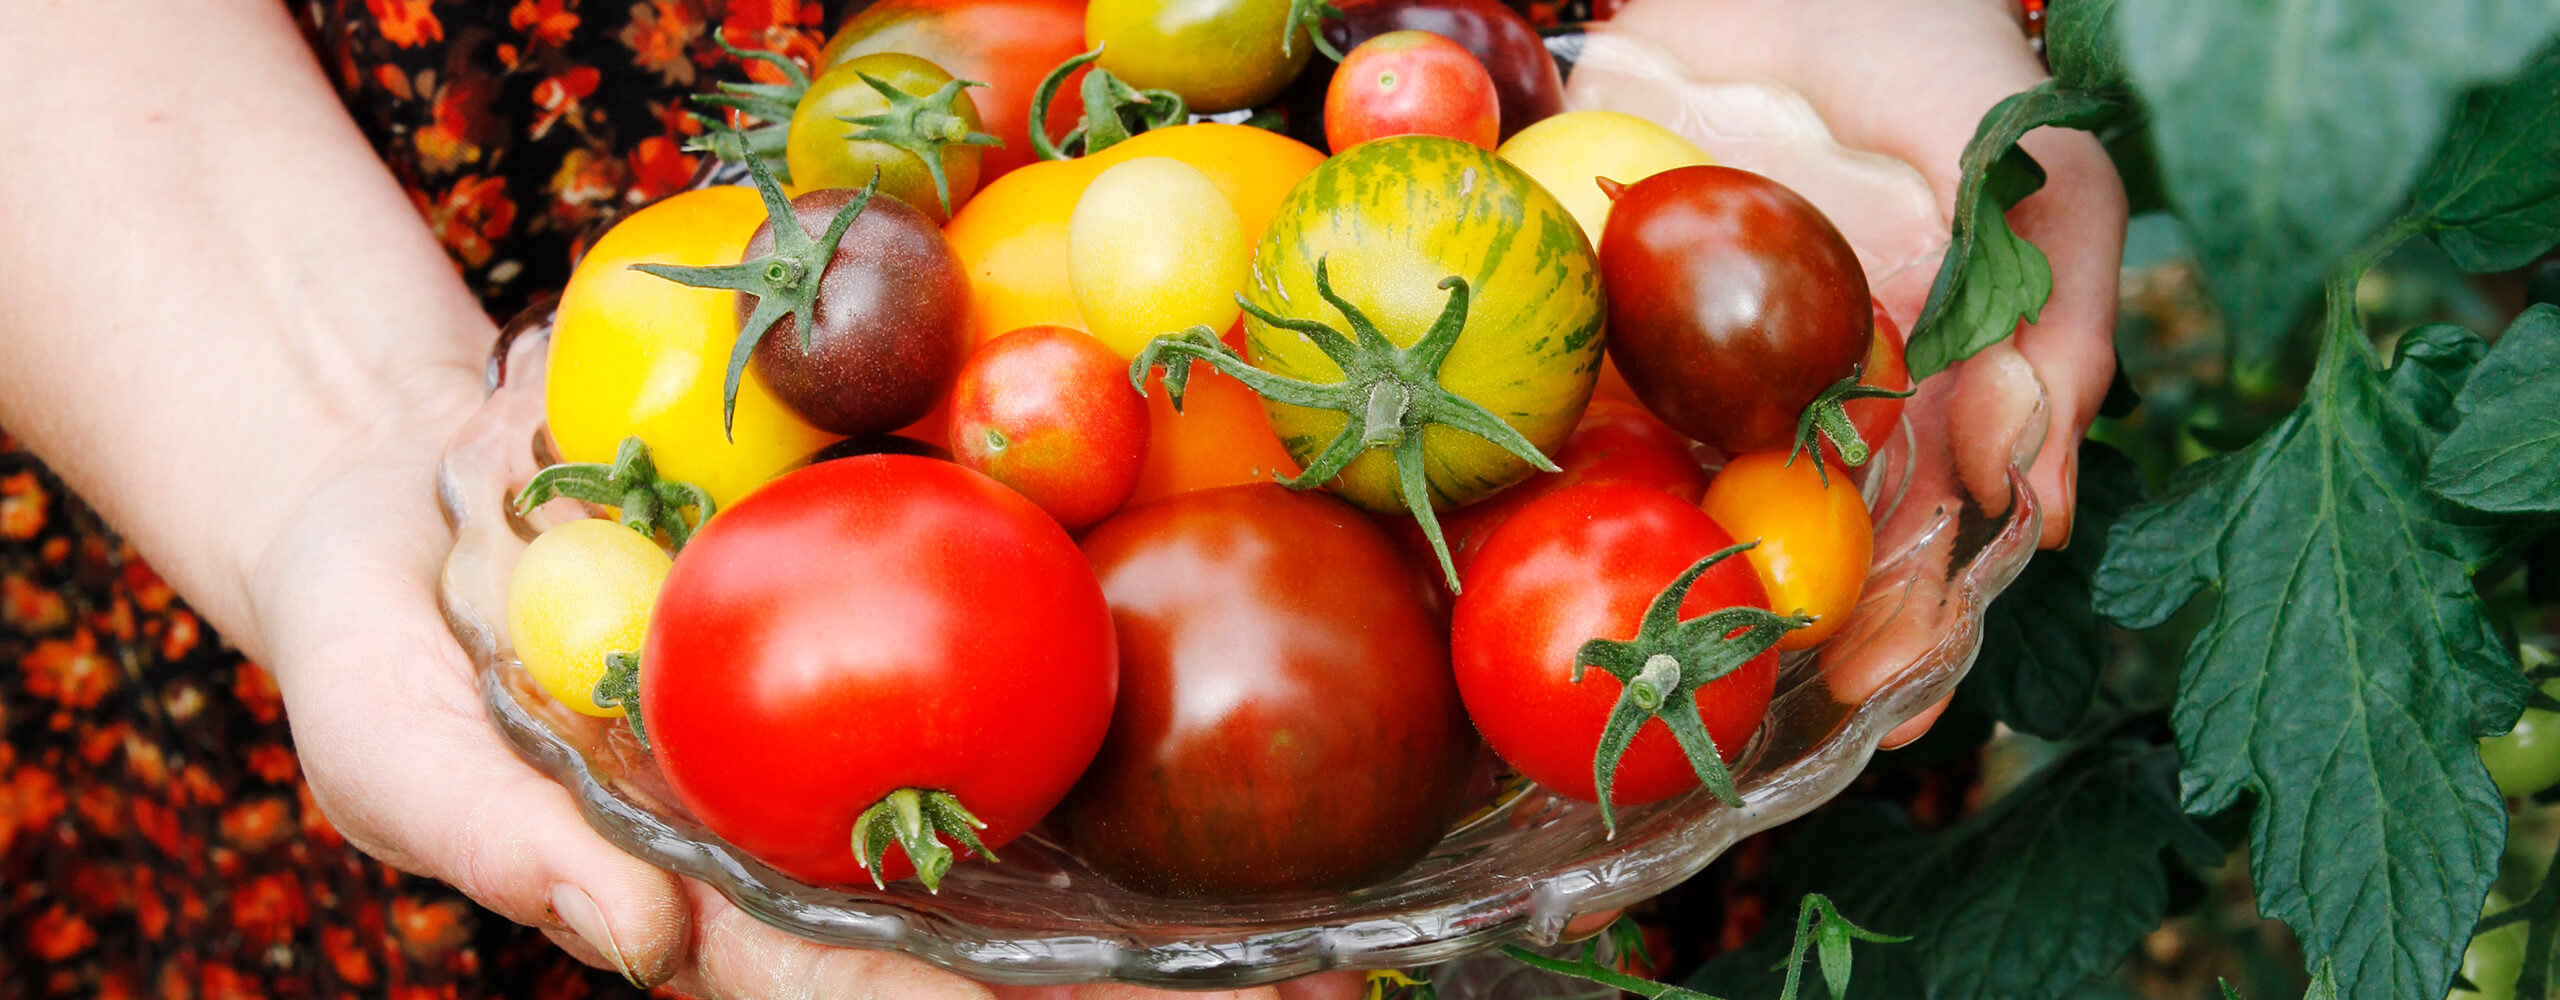 Tomaattien istuttaminen Galina Kiziman menetelmällä: esimerkki vaippatekniikasta älykkäille laiskoille